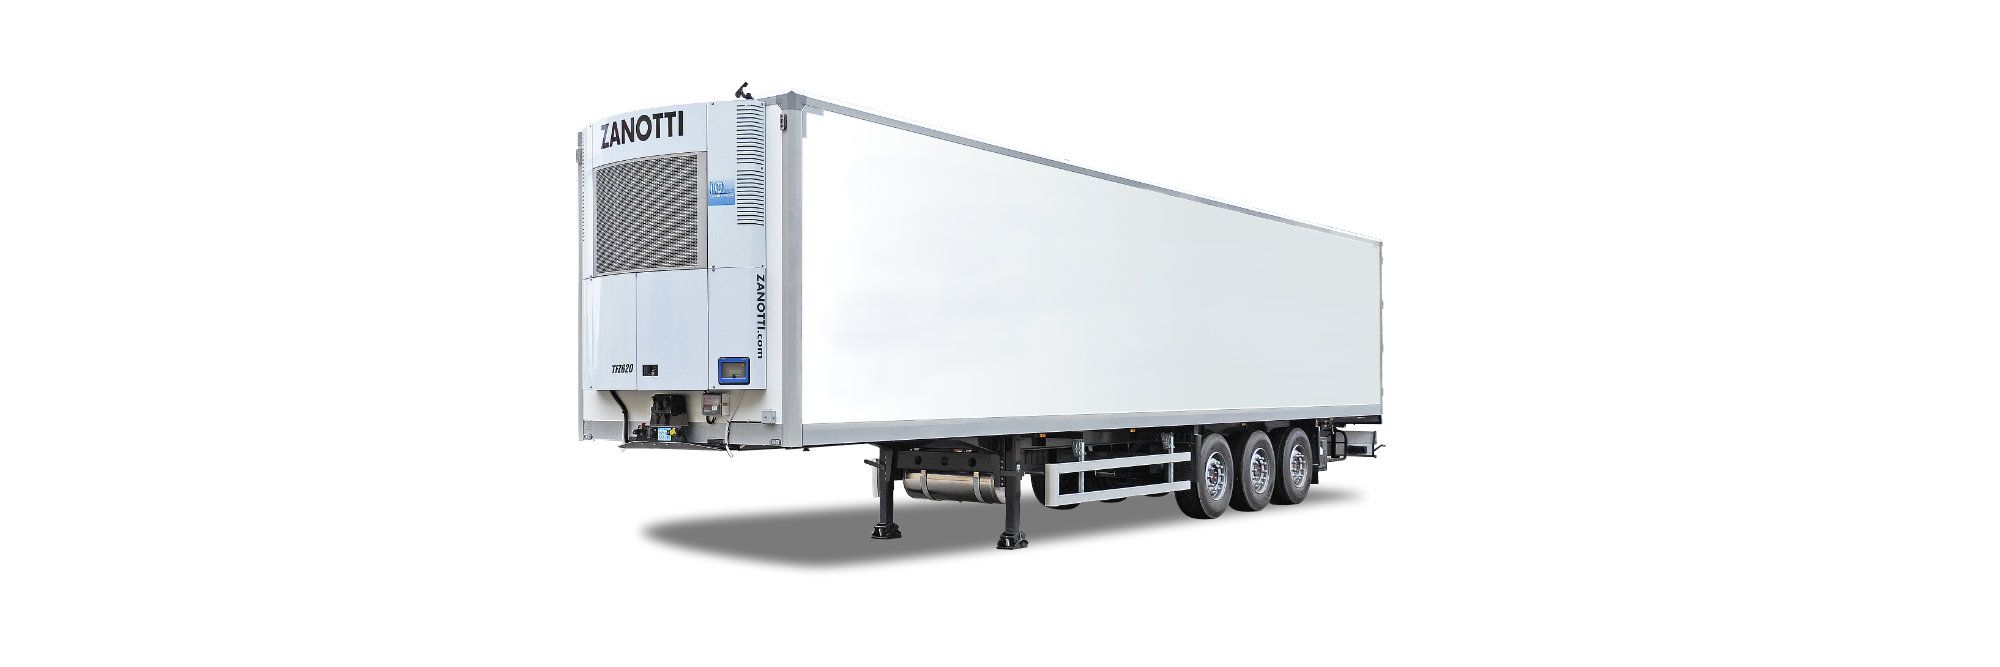 Decopan Commercial Vehicle (Ticari Araç) CTP levha soğuk dondurulmuş gıda treyler, kamyon, kamyonet, van kasa üretimi